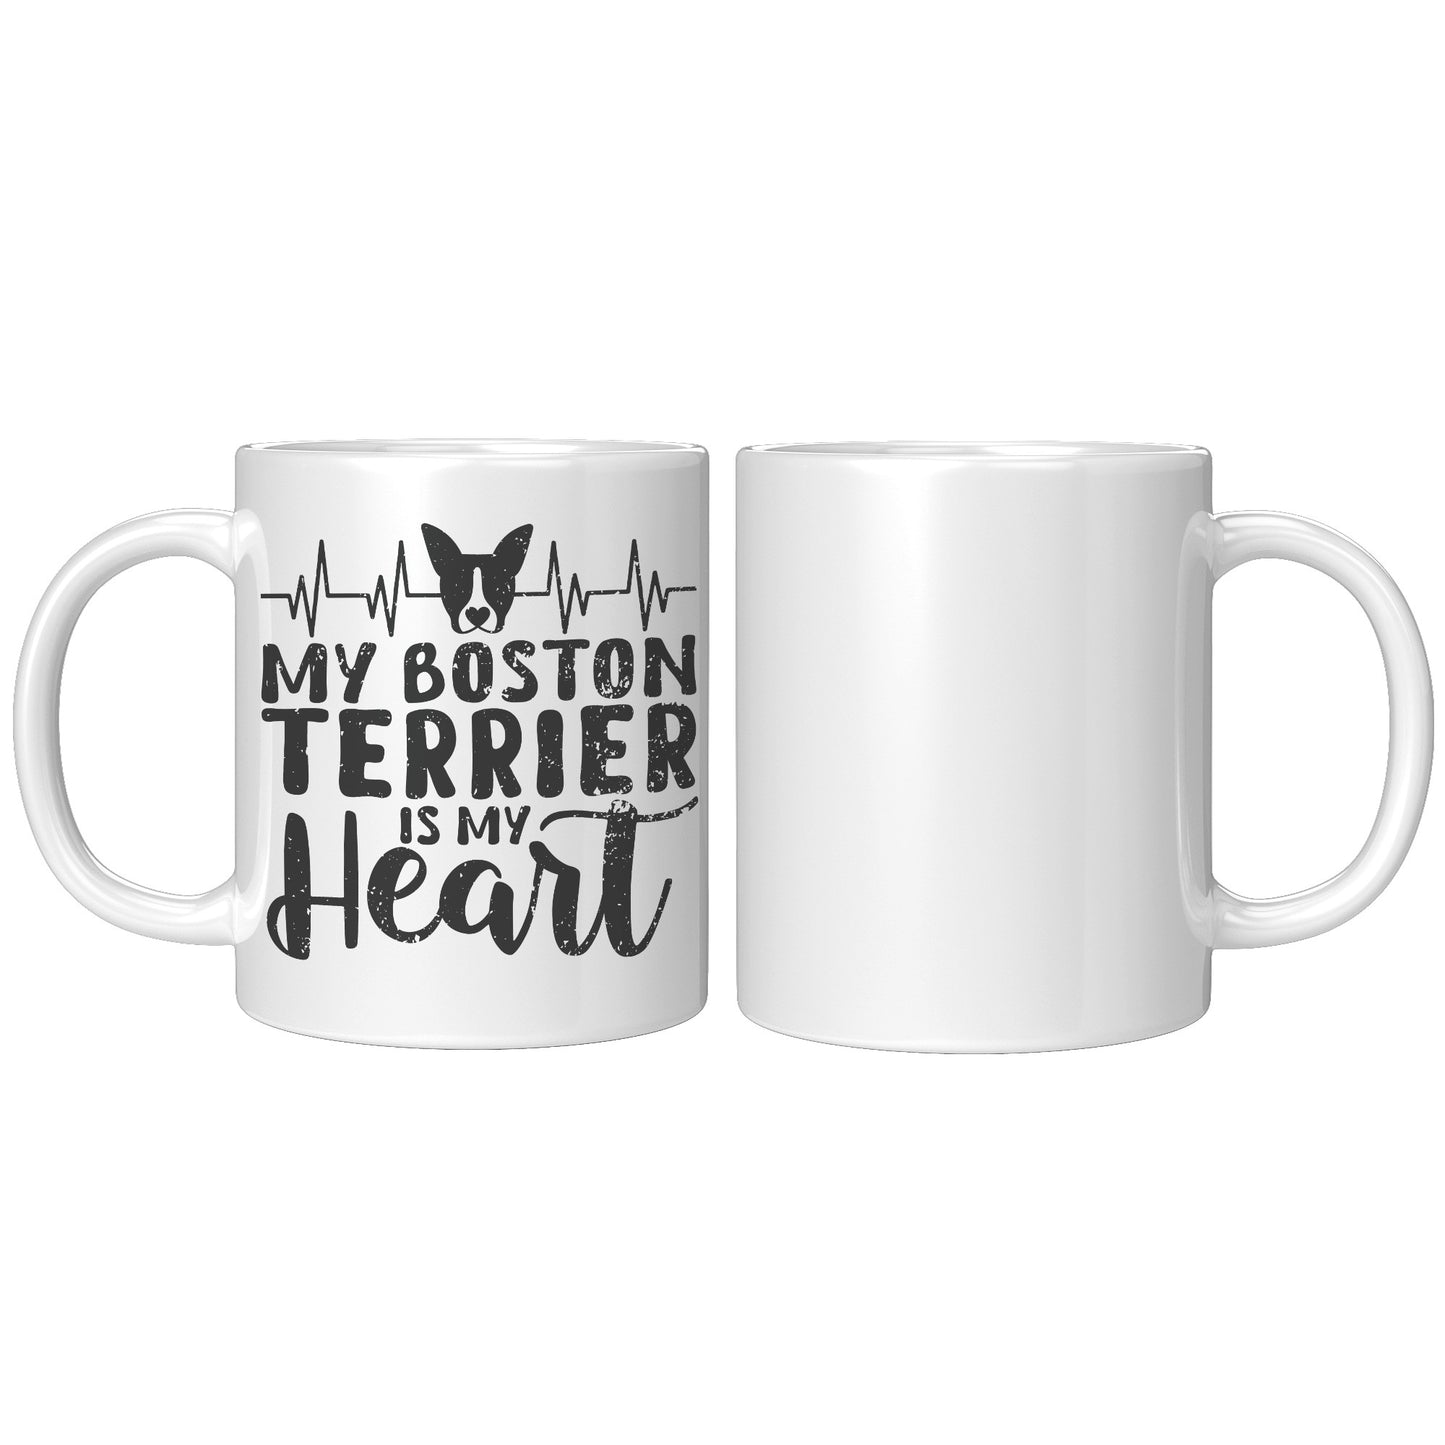 Bandit -Mug for Boston Terrier lovers